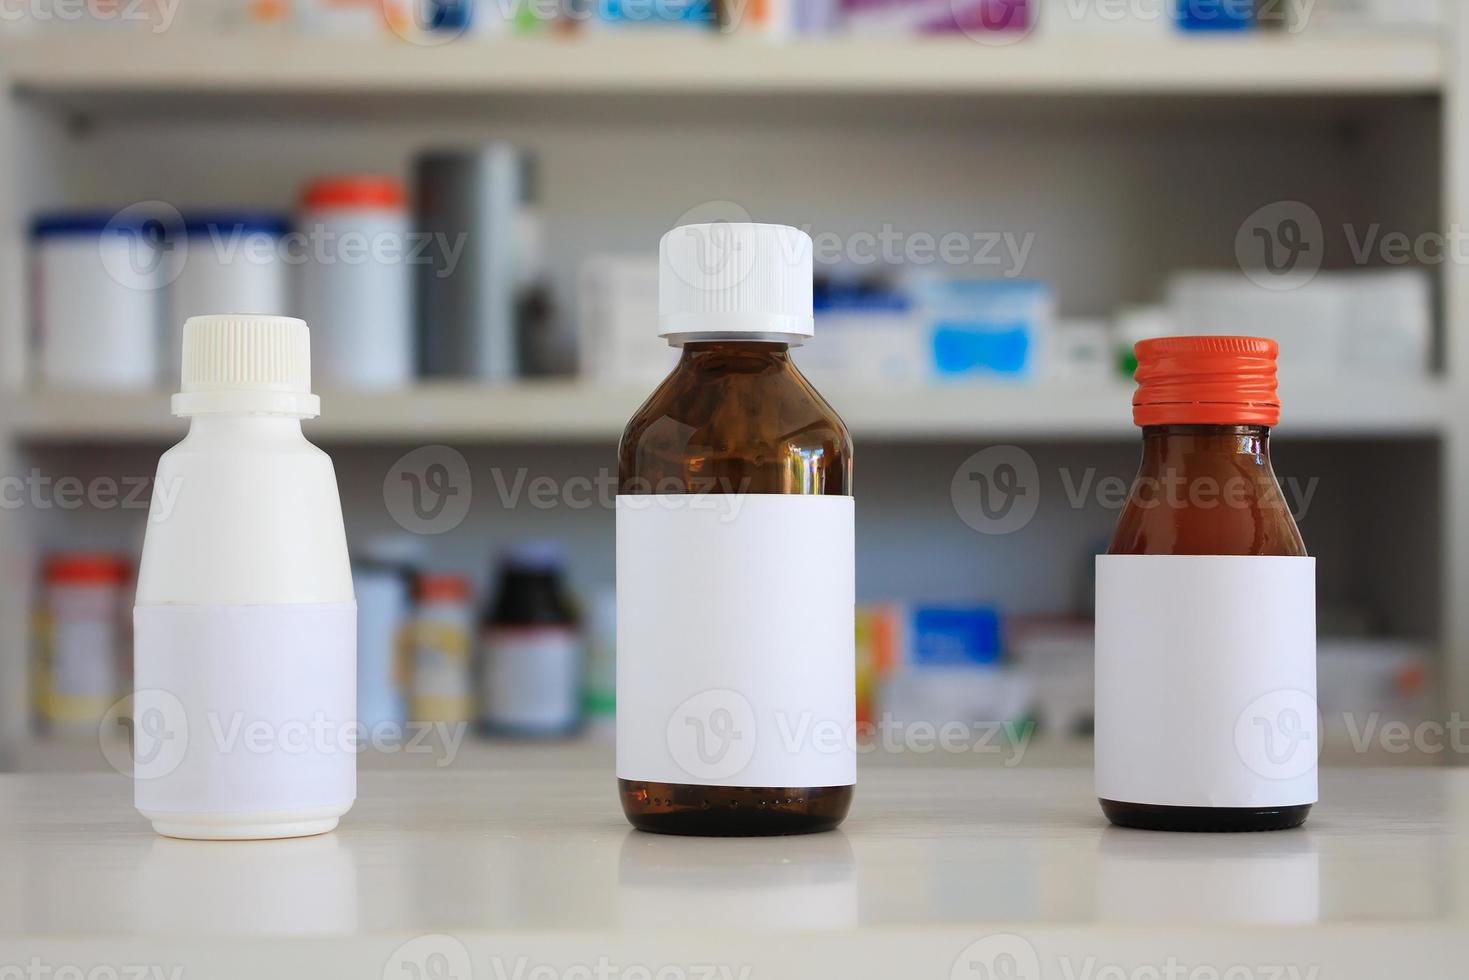 rótulo branco em branco do frasco de remédio com prateleiras desfocadas de drogas no fundo da farmácia foto